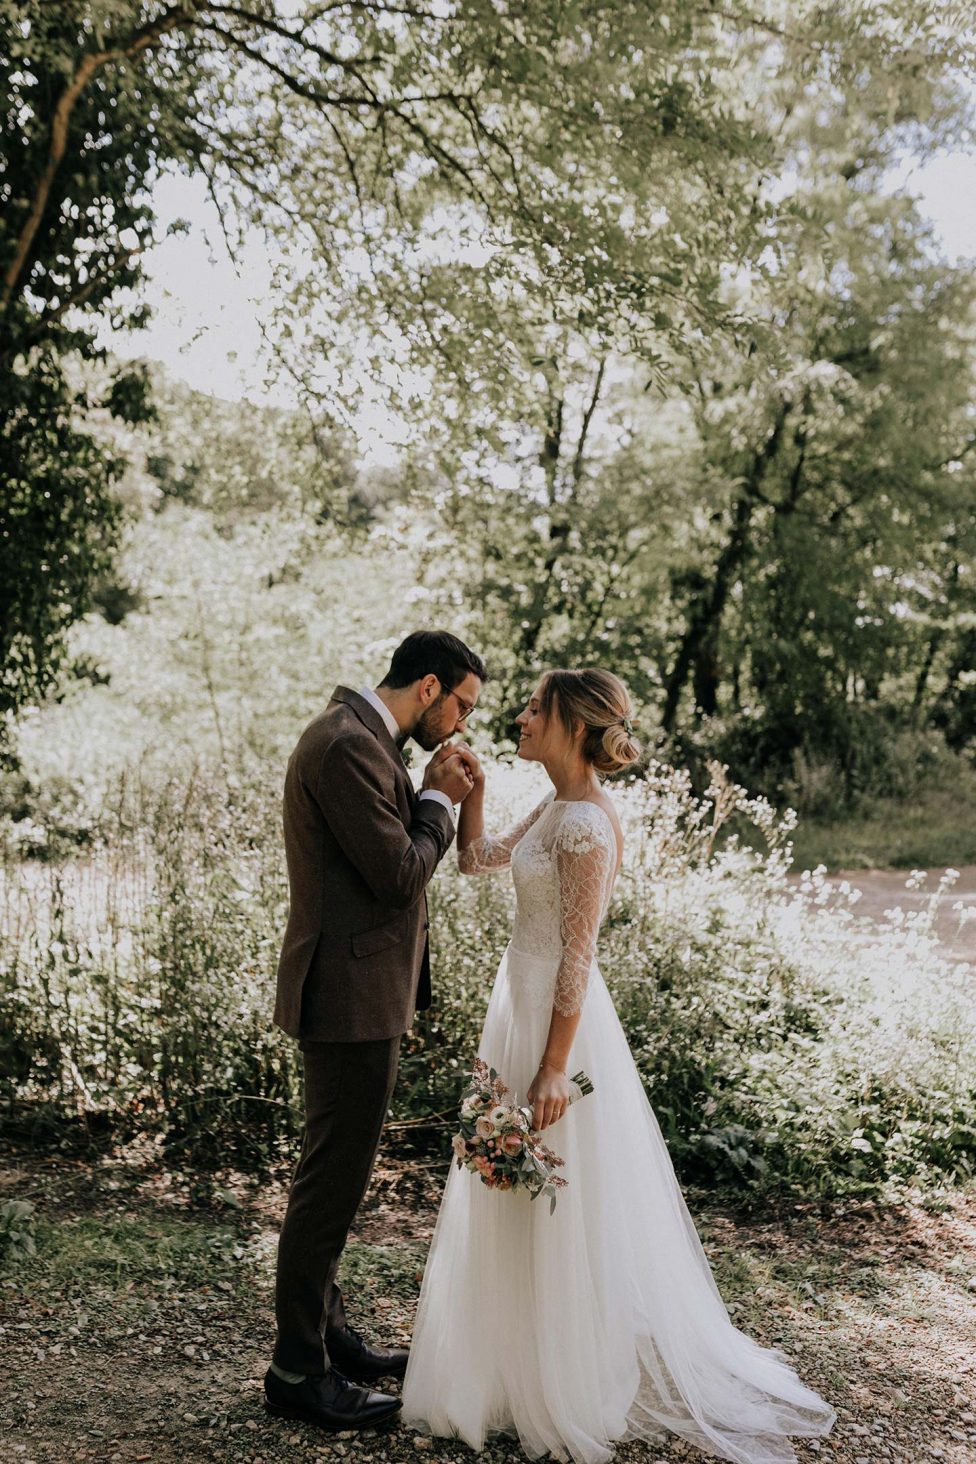 Hochzeitswahn - Ein zärtlicher Moment in einer üppigen Waldkulisse, als der Bräutigam seiner Braut, die einen Blumenstrauß hält, die Hand küsst. Beide sind für ihren Hochzeitstag elegant gekleidet.